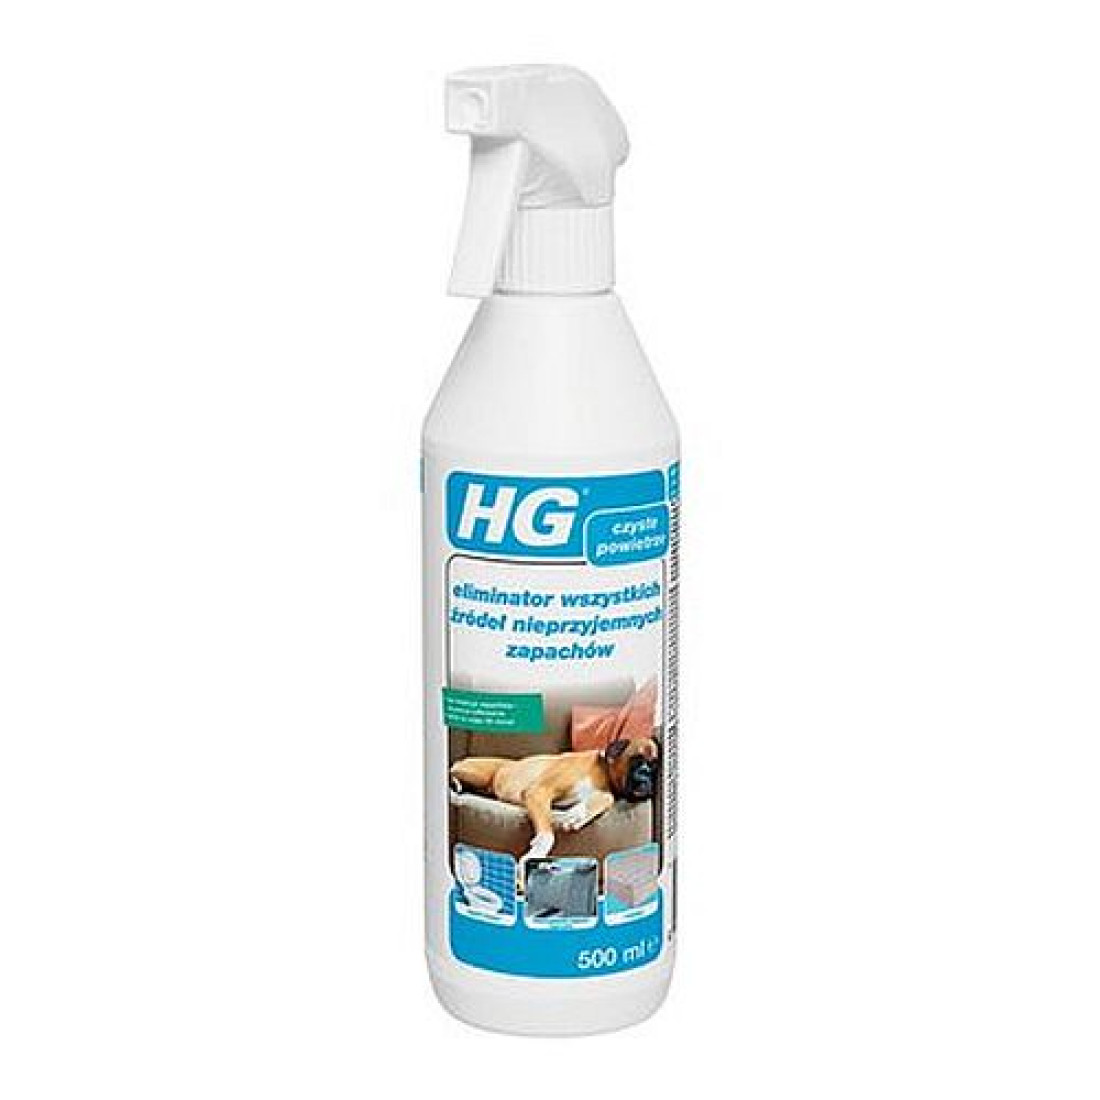 HG Eliminator wszystkich źródeł nieprzyjemnych zapachów